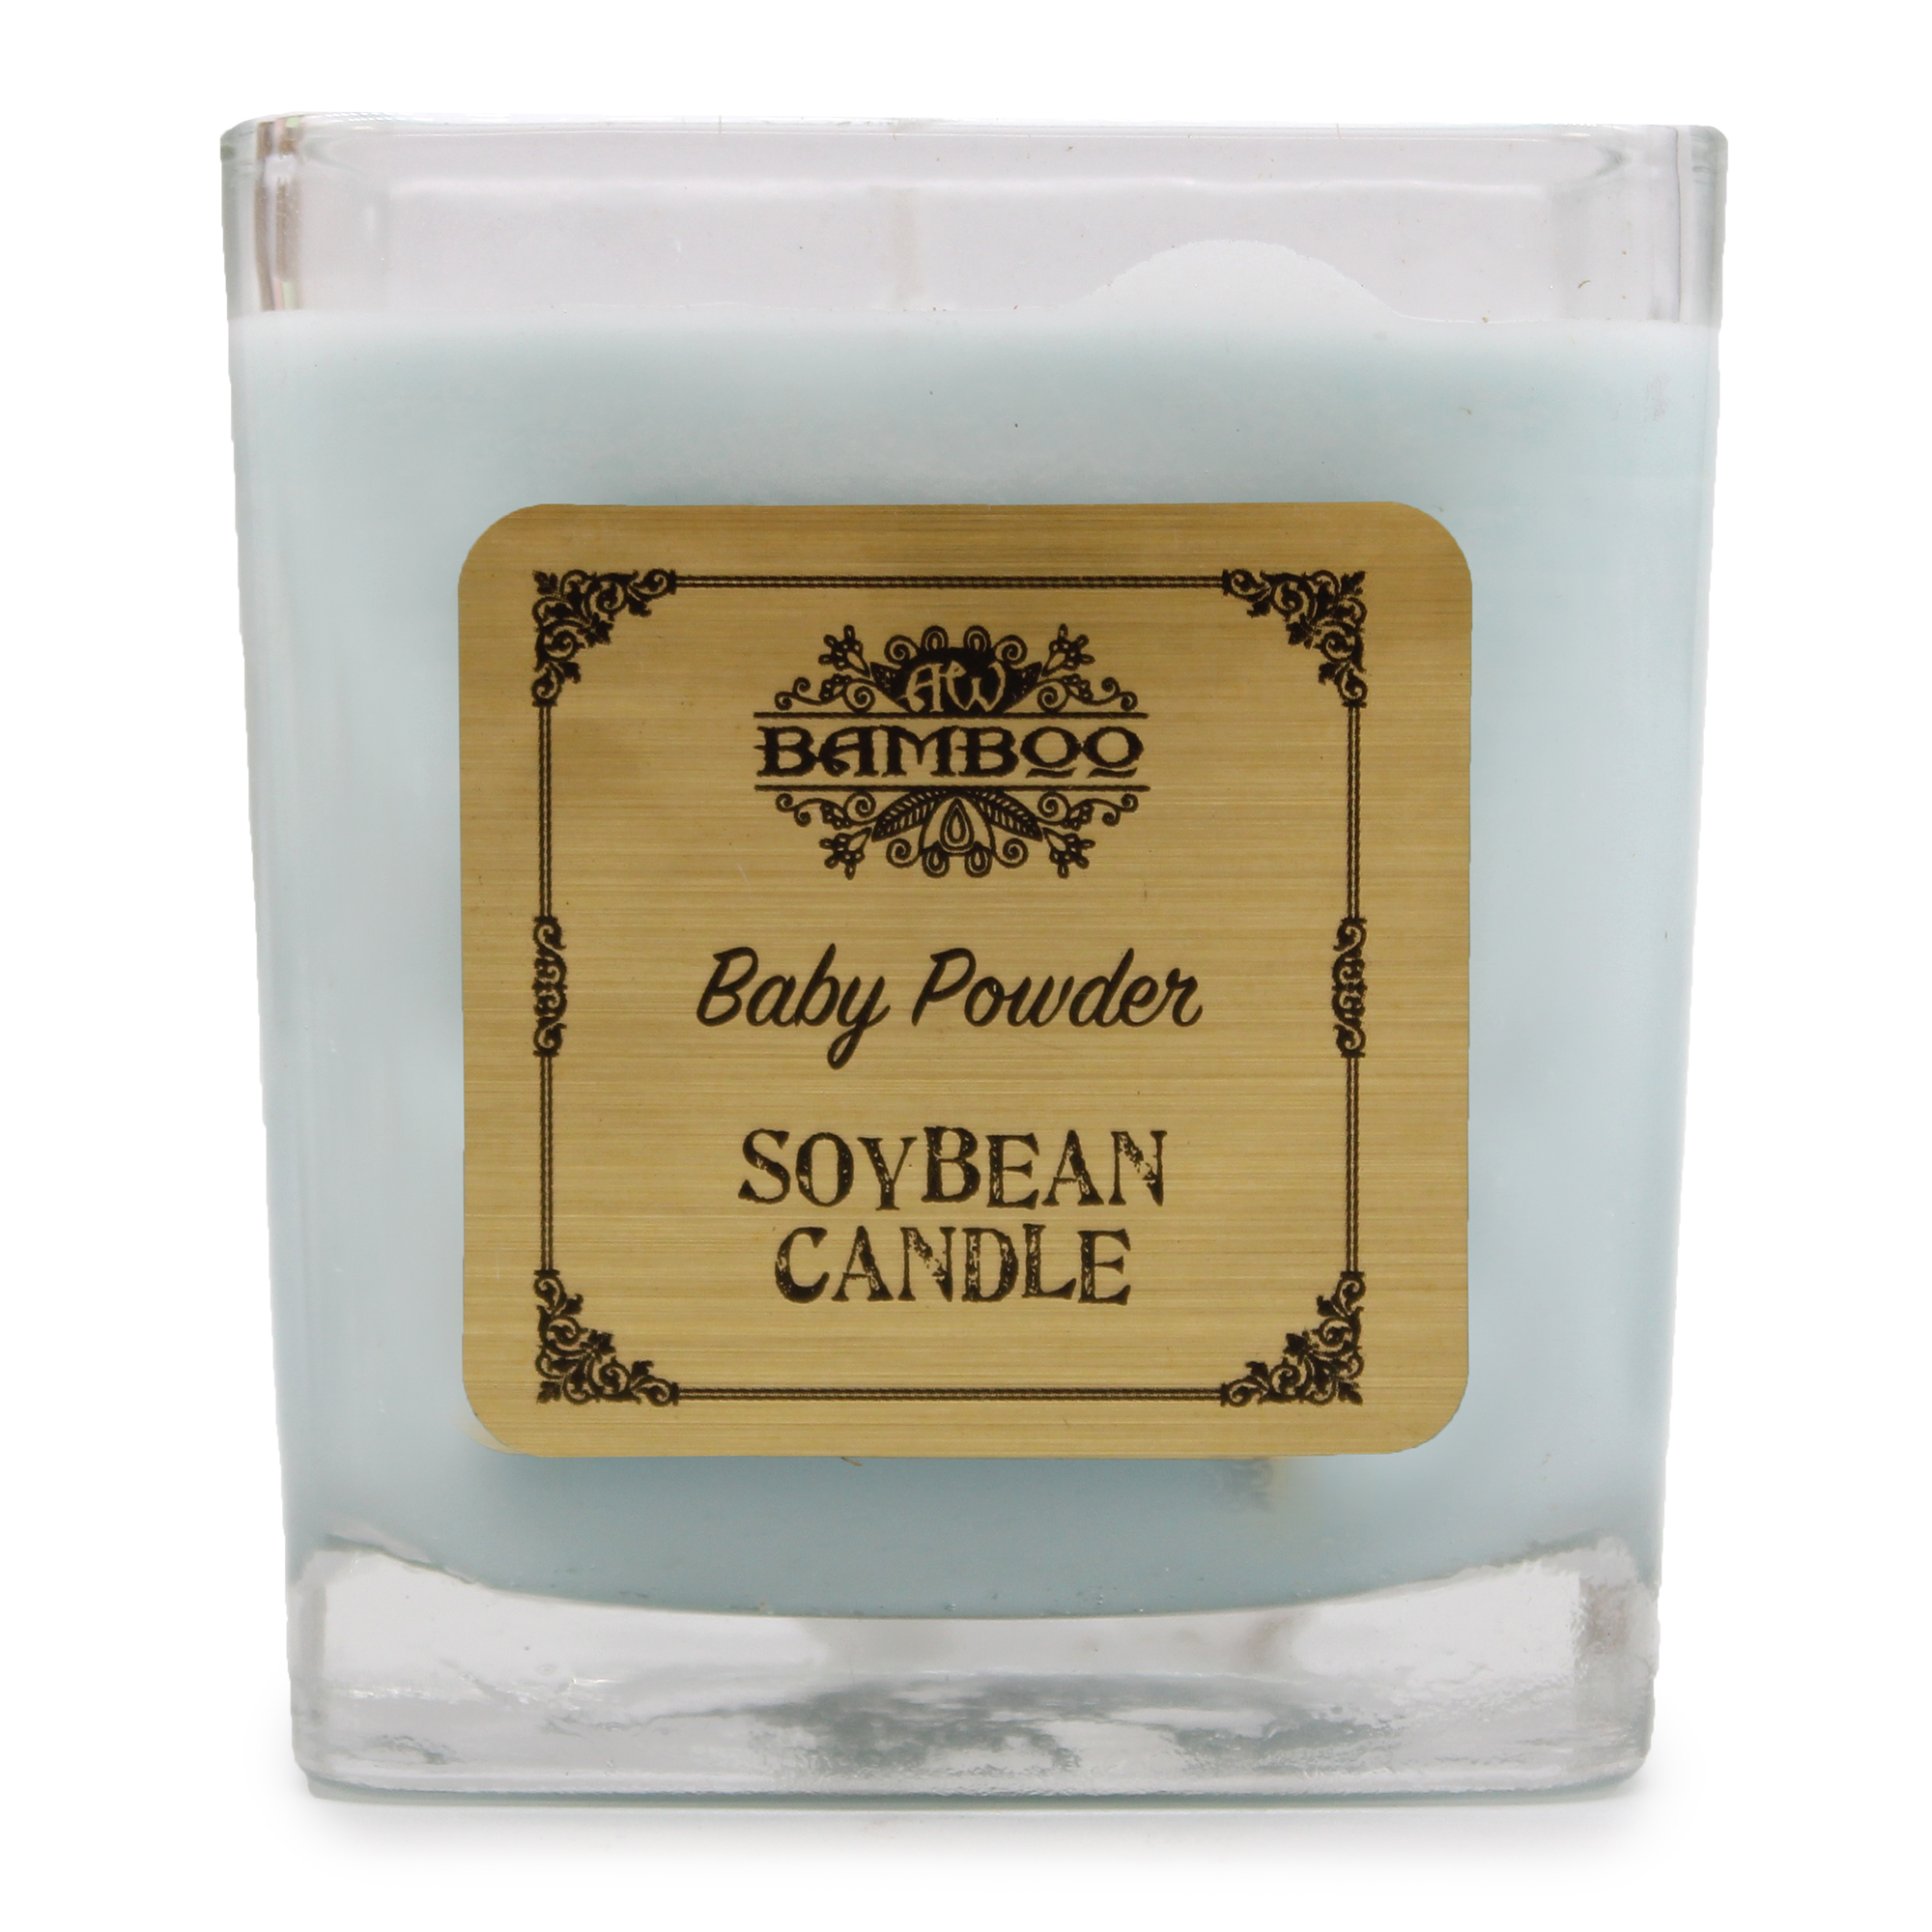 Soybean Jar Candle - Baby Powder